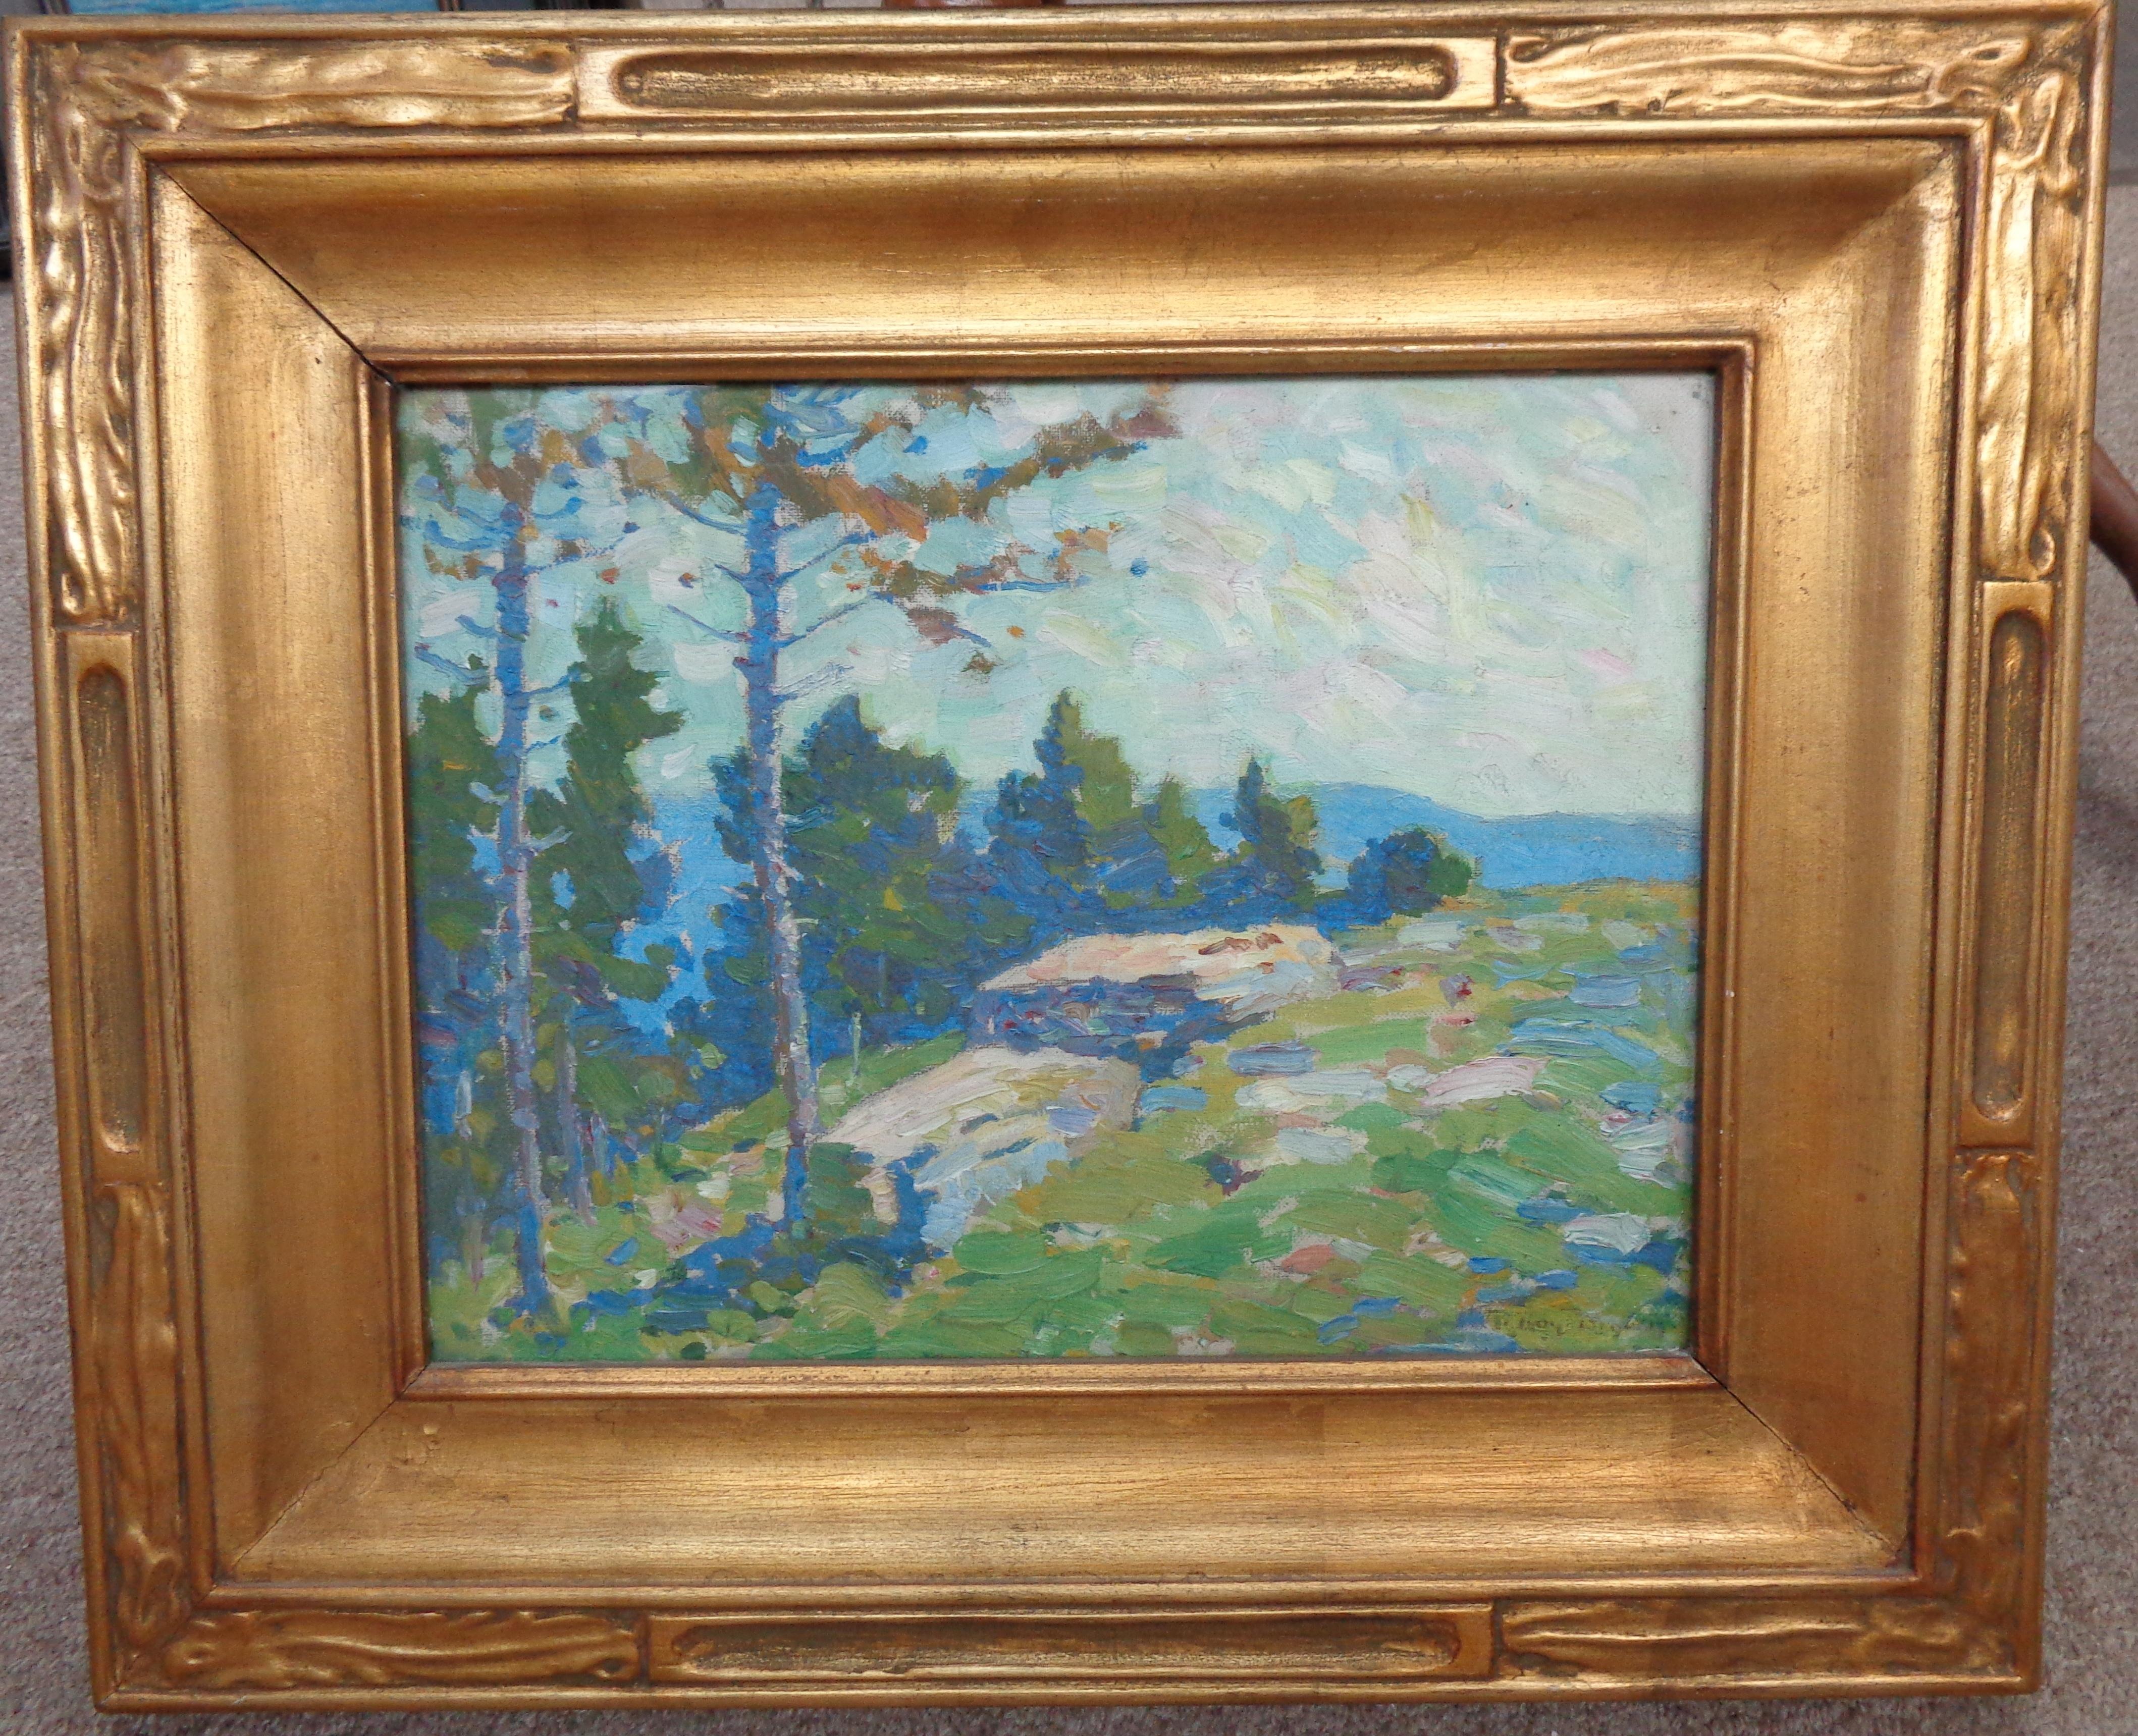 Un paysage de montagne à flanc de colline peinture à l'huile sur panneau par l'artiste Roy Henry Brown possible scène de l'Ouest. La peinture est sous verre. L'image mesure à vue 10 x 13 et 16,75 x 19,75 encadrée telle quelle. Le tableau est très